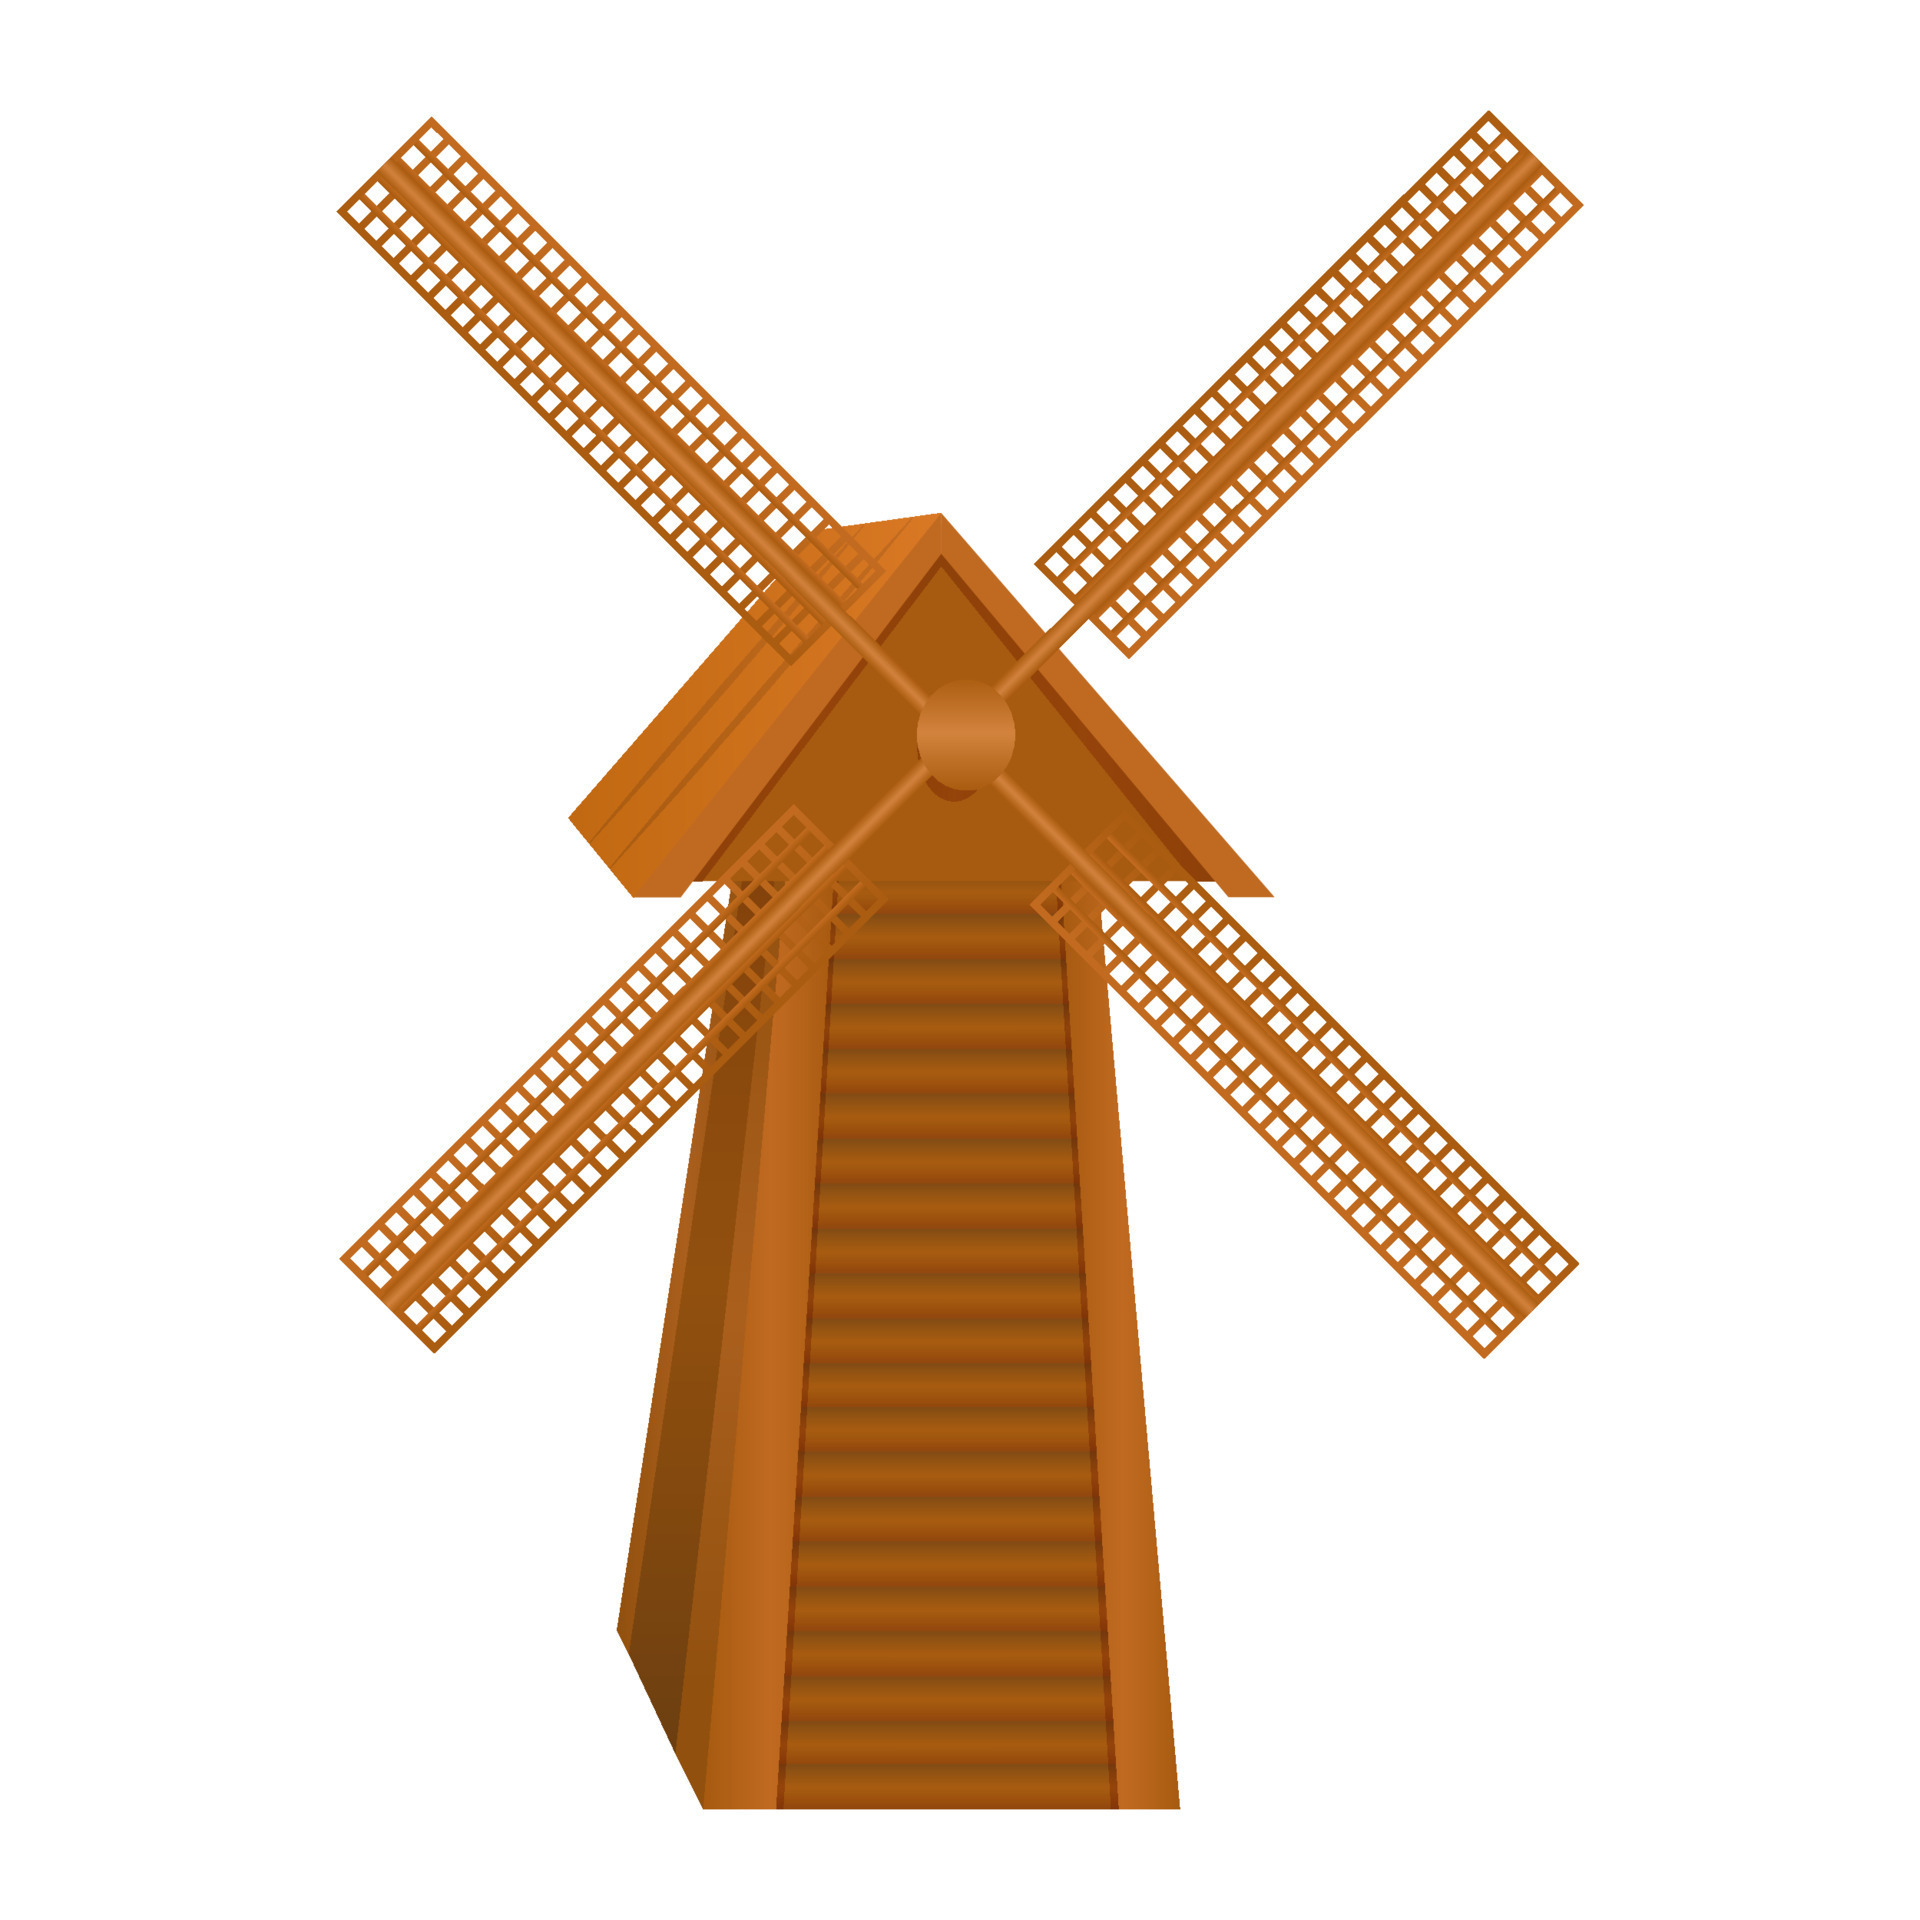 moinho de vento antigo, moinho de vento de madeira vintage. construção de  fazenda holandesa tradicional para moer grãos de trigo em farinha. desenho  vetorial de arquitetura rural isolada no fundo branco 9302739